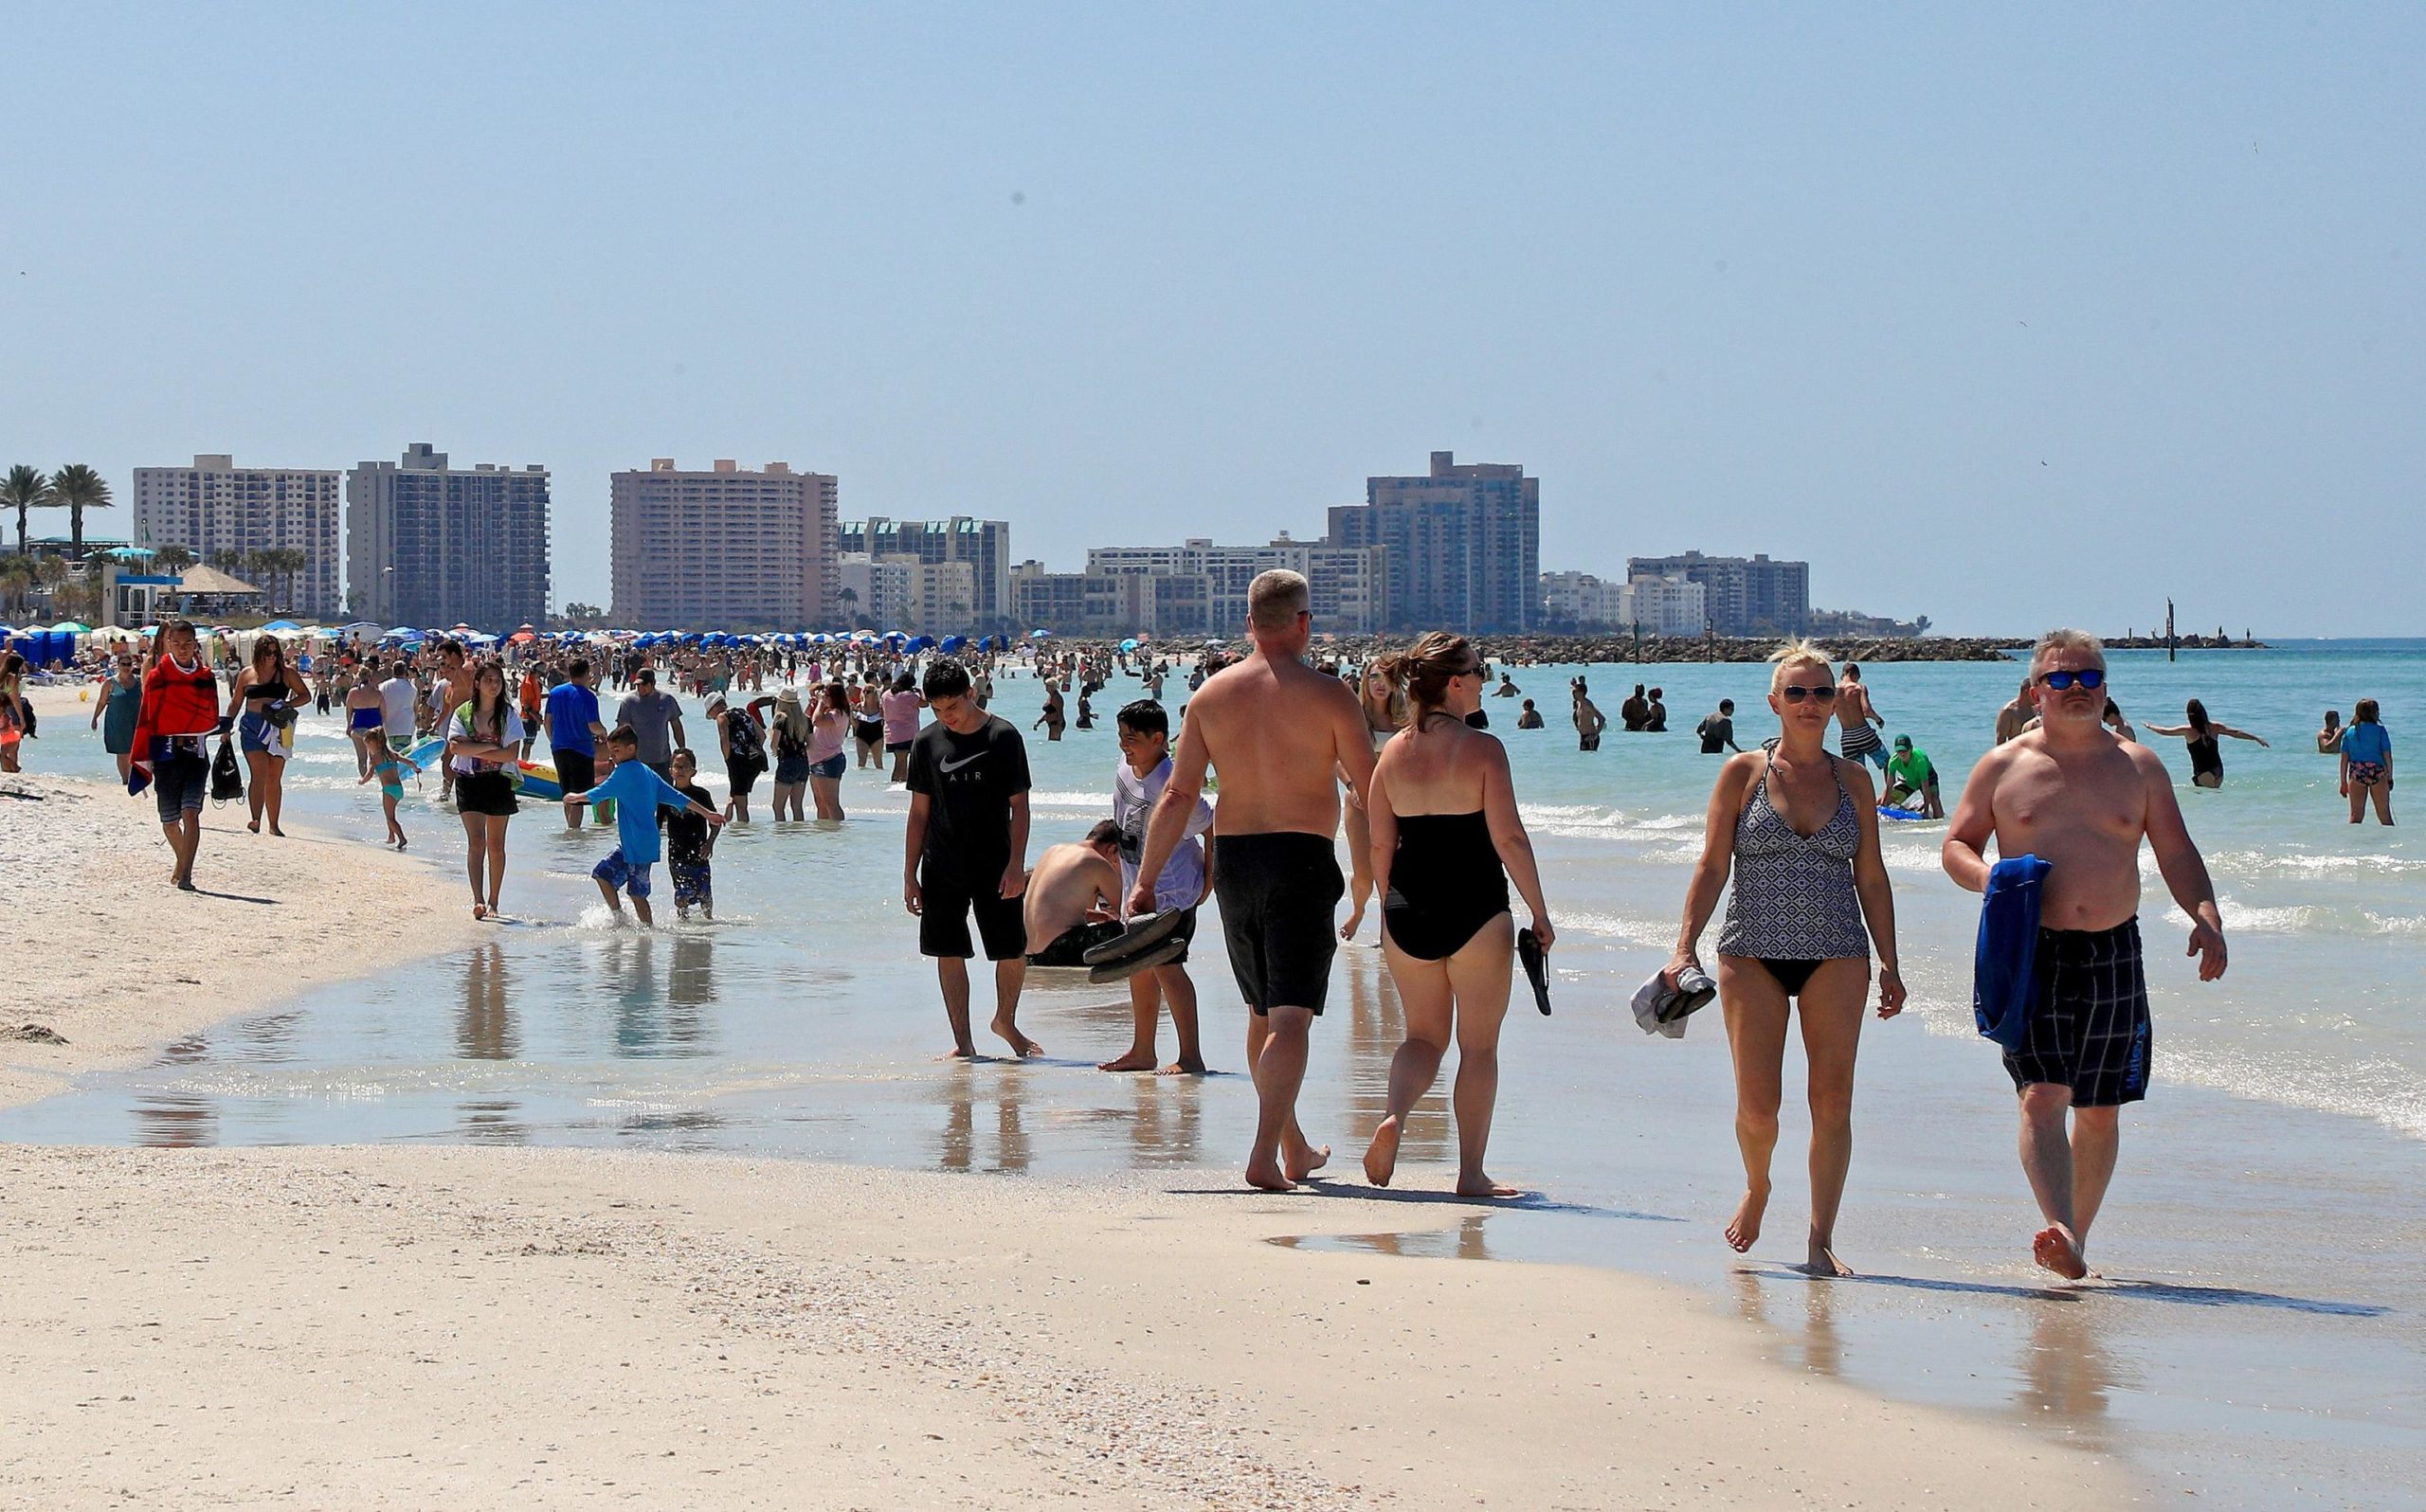 Miami due giorni fa, prima della decisione del sindaco di chiudere le spiagge